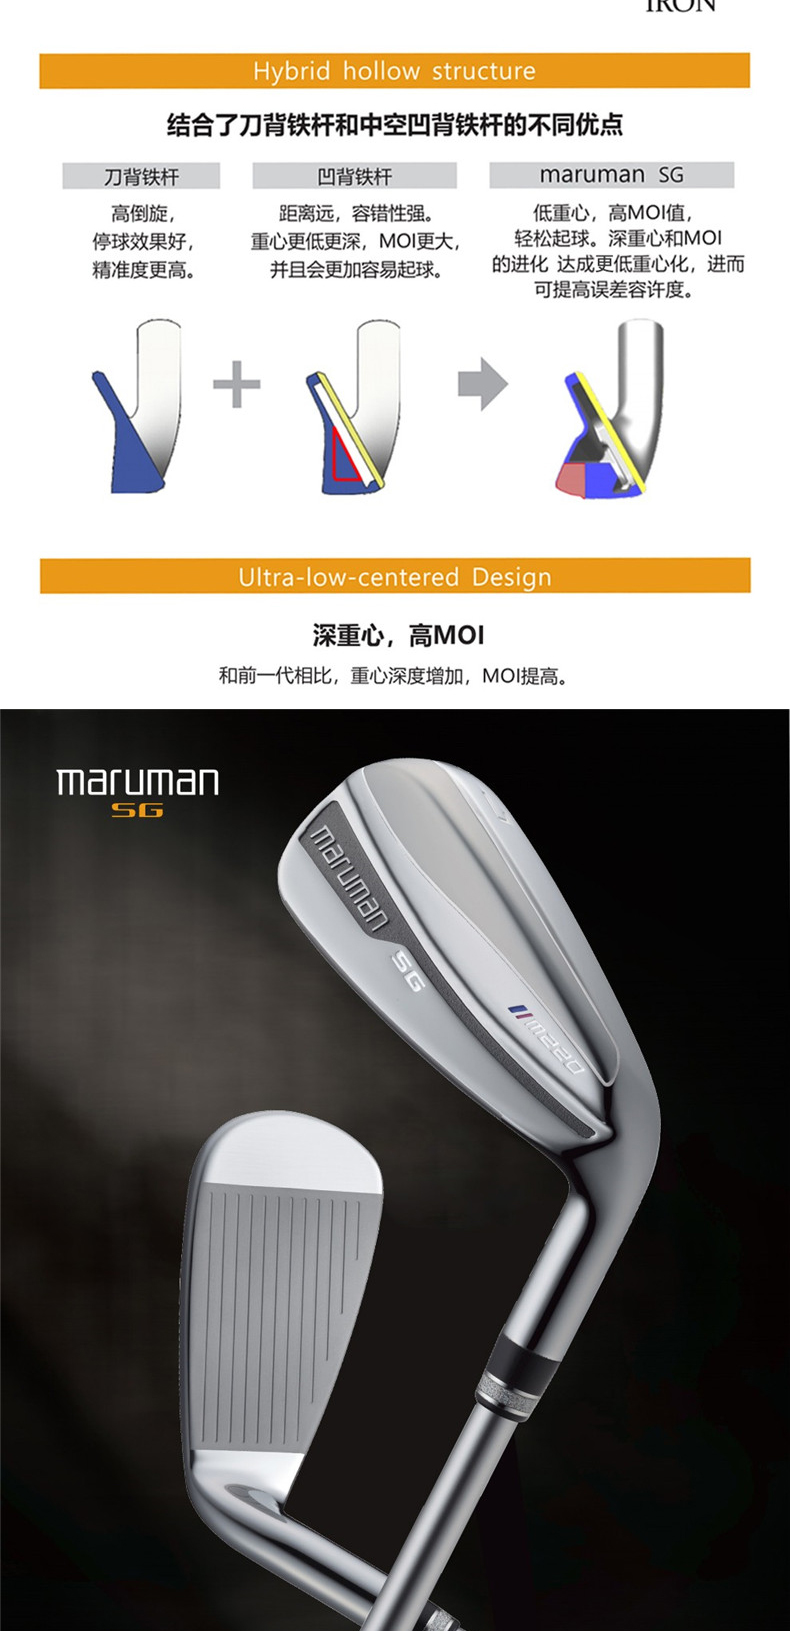 【官方旗舰店】MARUMAN高尔夫球杆 全套SG套杆初中级男女士套杆